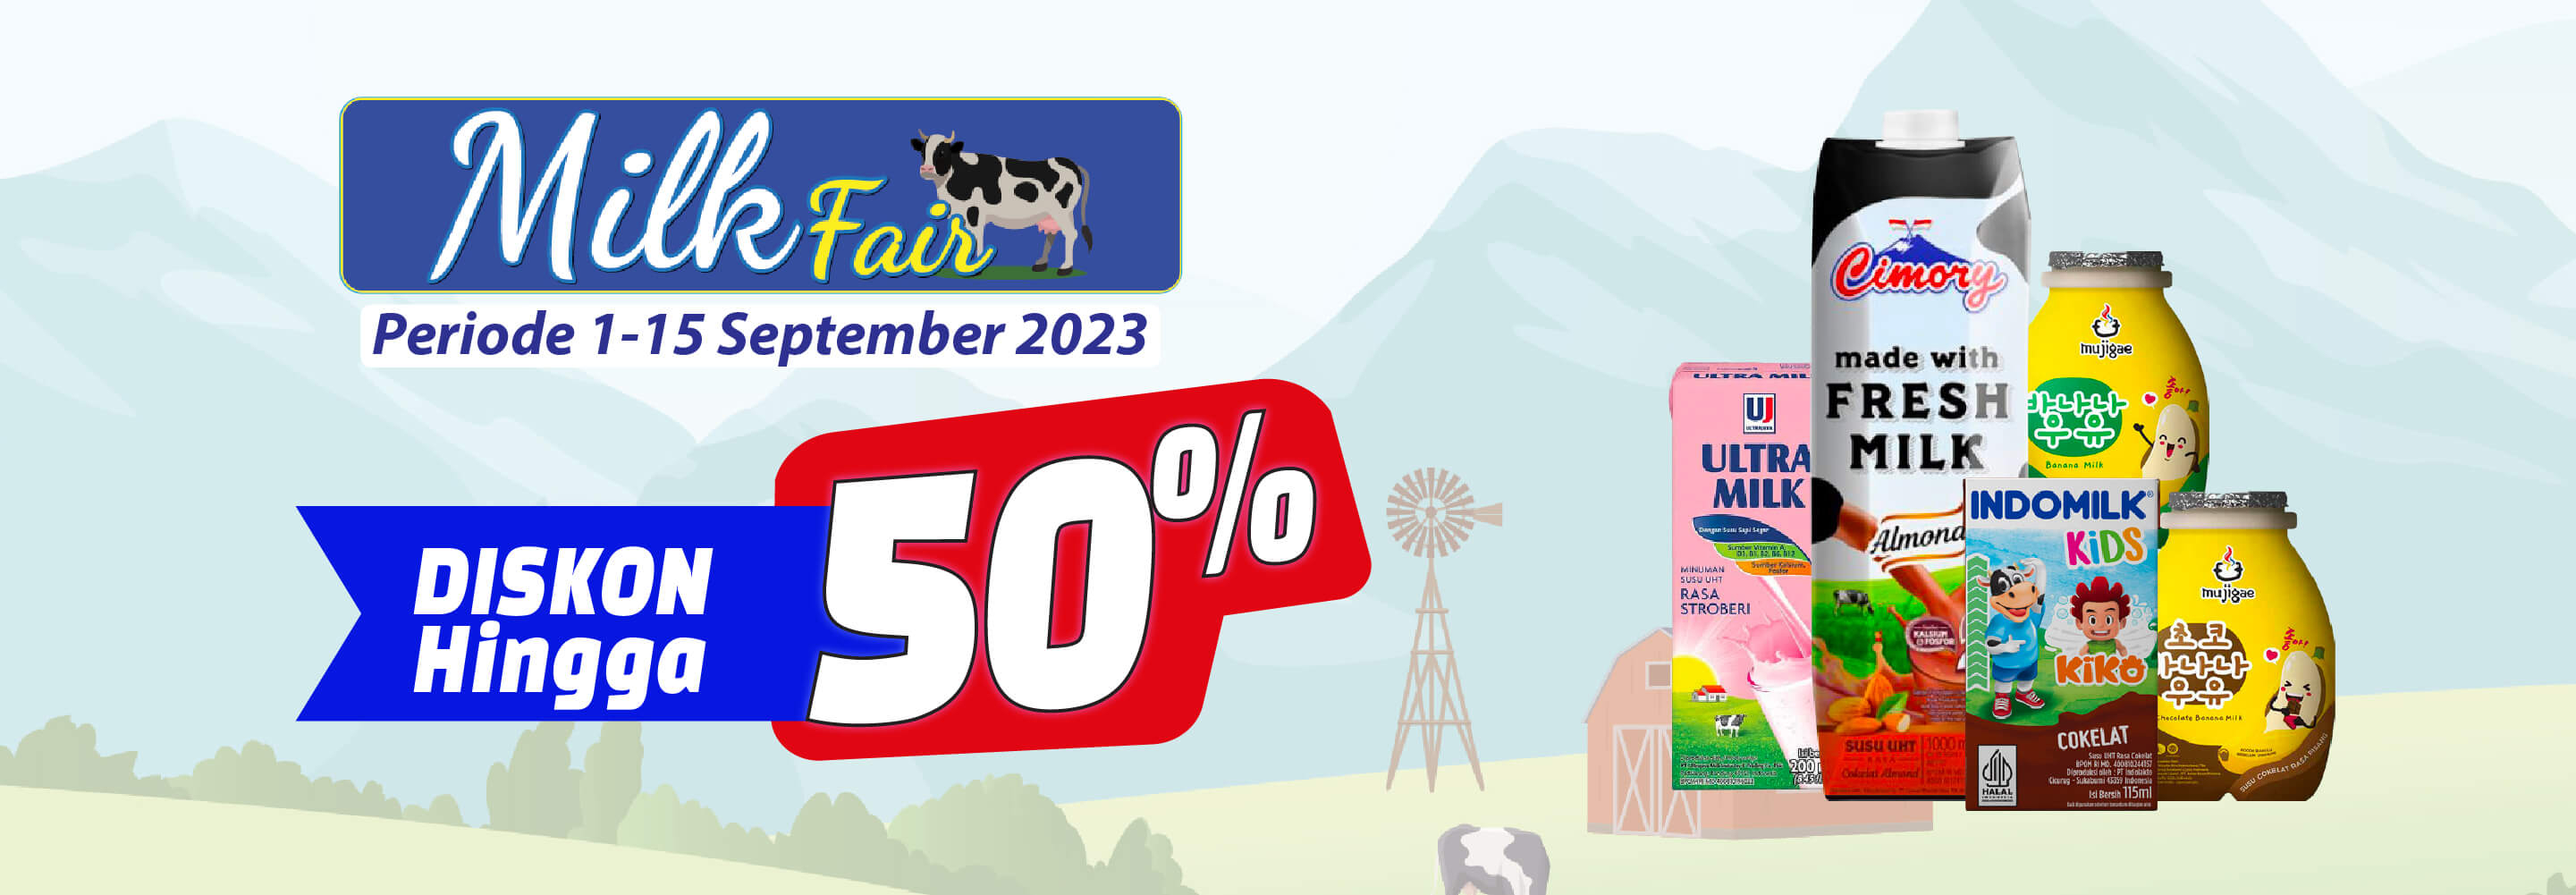 Promo Promo Milk Fair Alfamart Alfamart